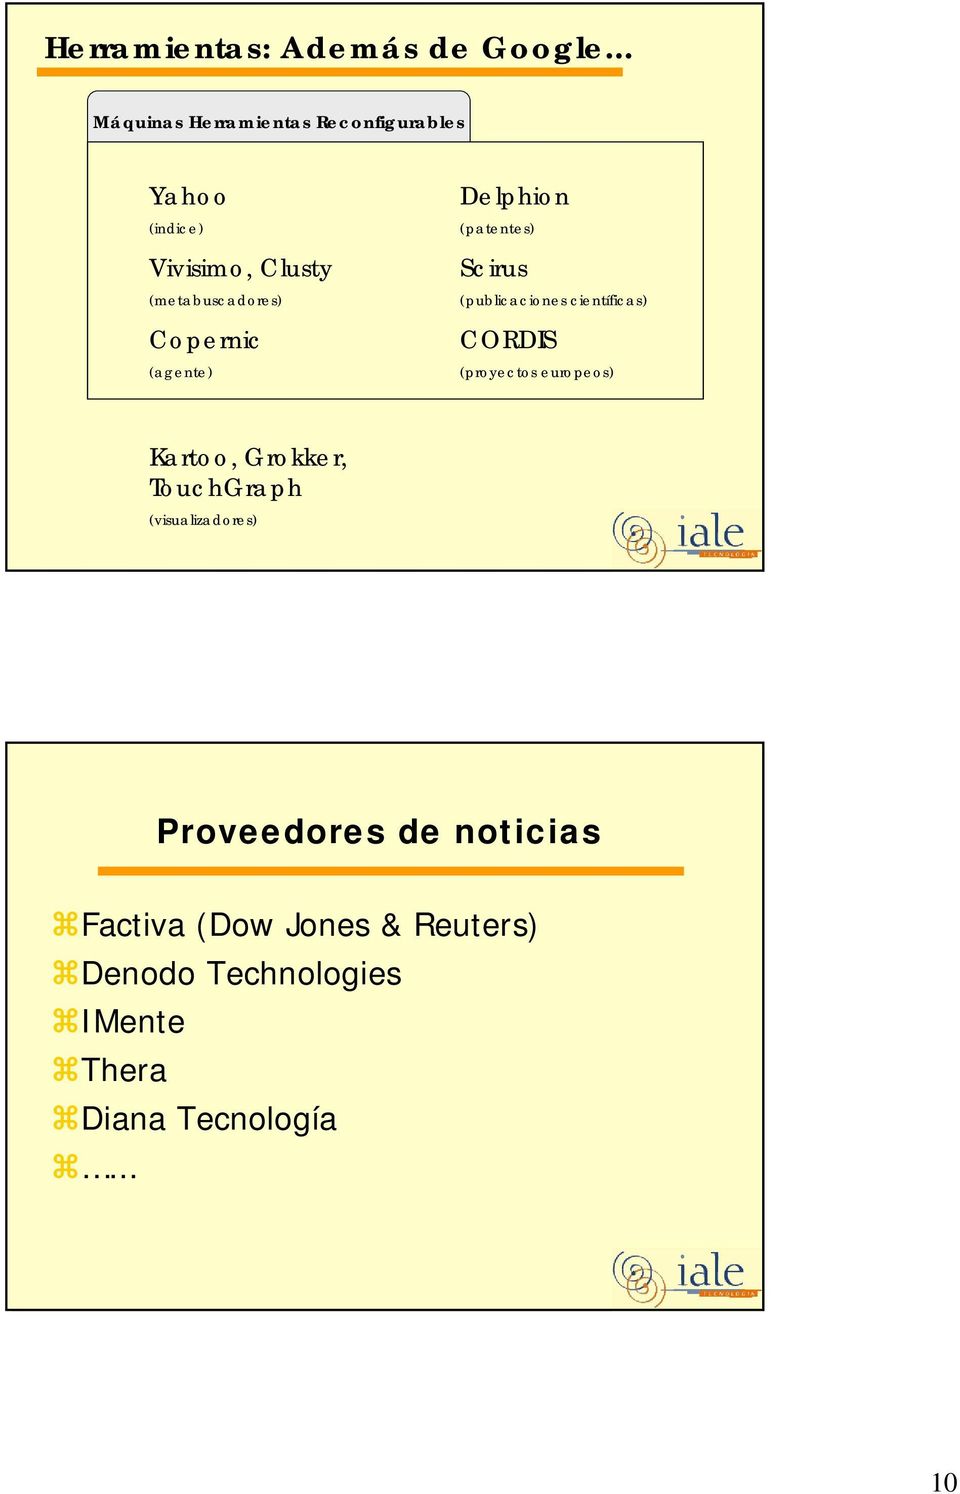 Copernic (agente) Delphion (patentes) Scirus (publicaciones científicas) CORDIS (proyectos